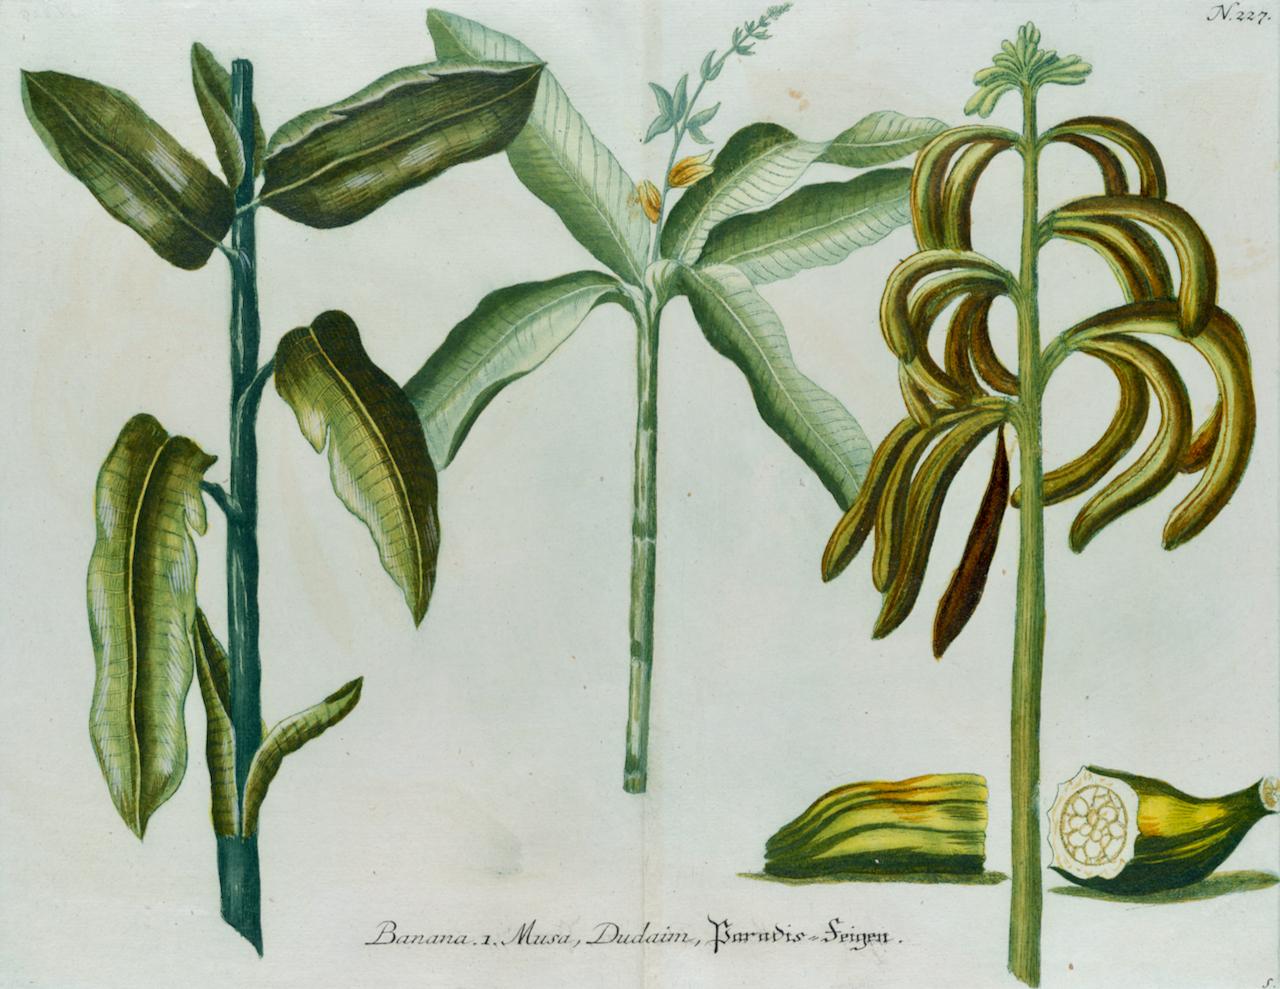 Jardinières de bananes : une gravure botanique du 18e siècle colorée à la main par J. Weinmann - Print de Johann Wilhelm Weinmann